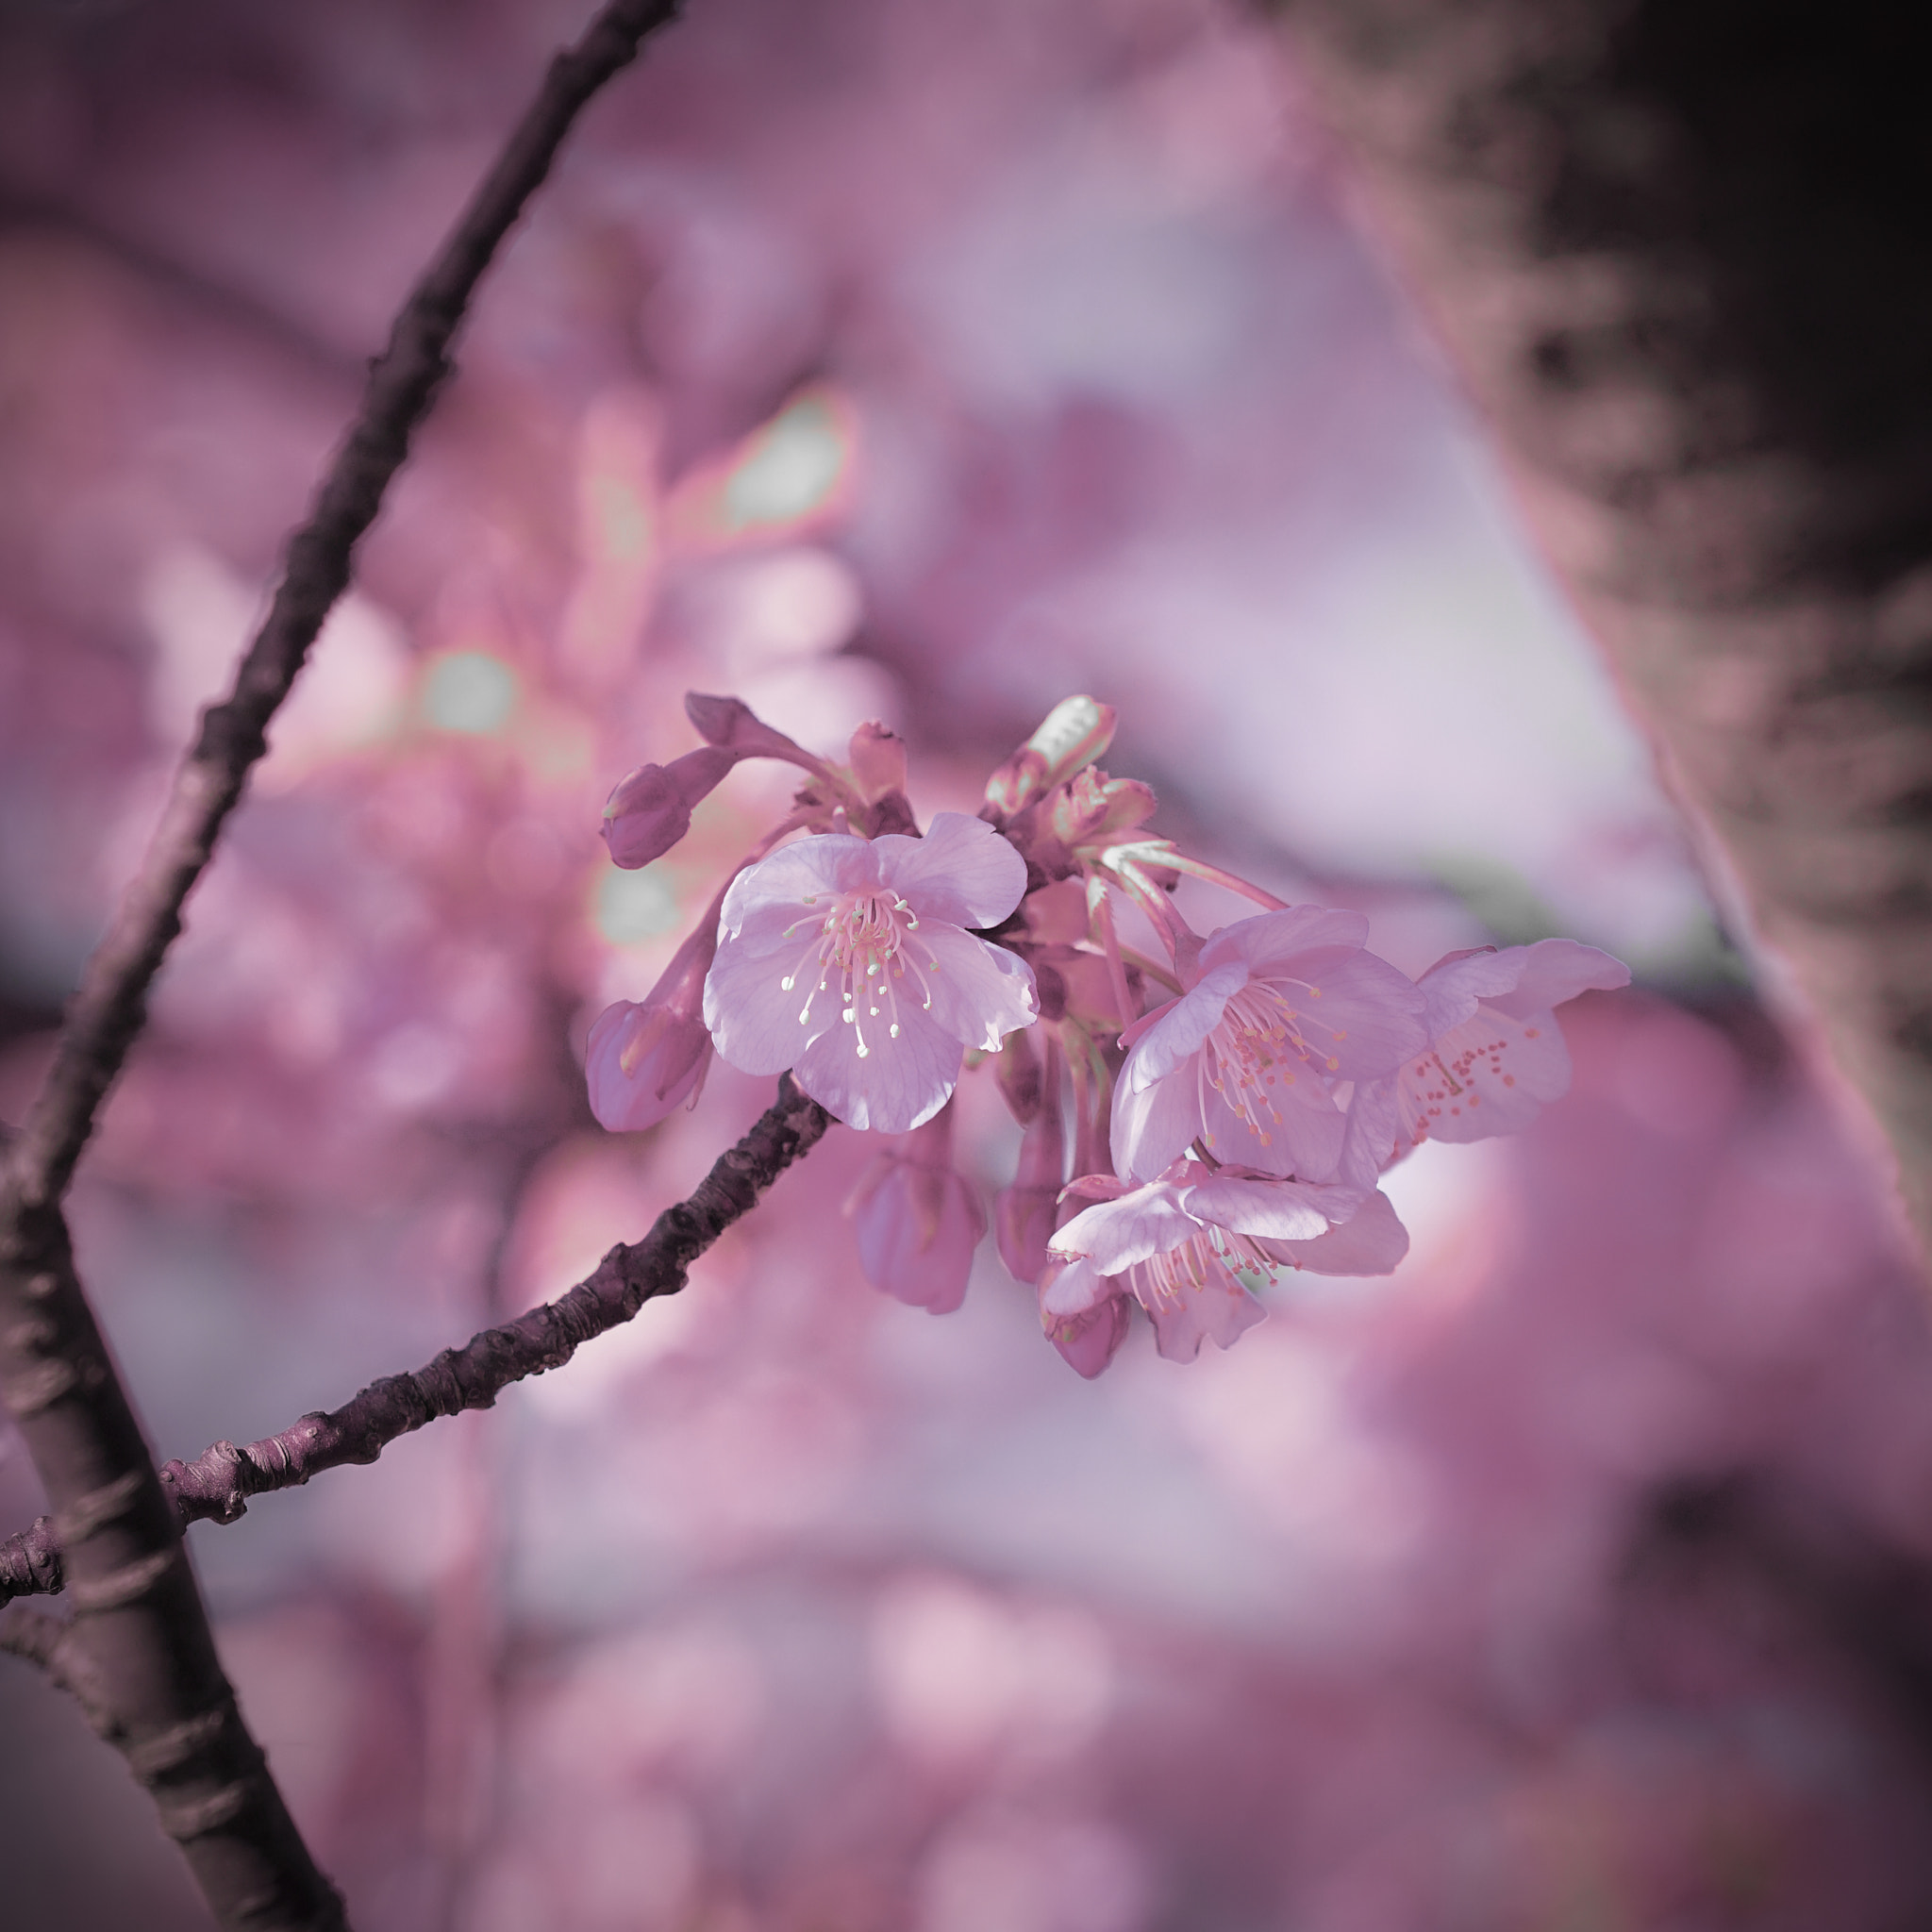 Sony a7 II sample photo. Kawazu-sakura blossom photography